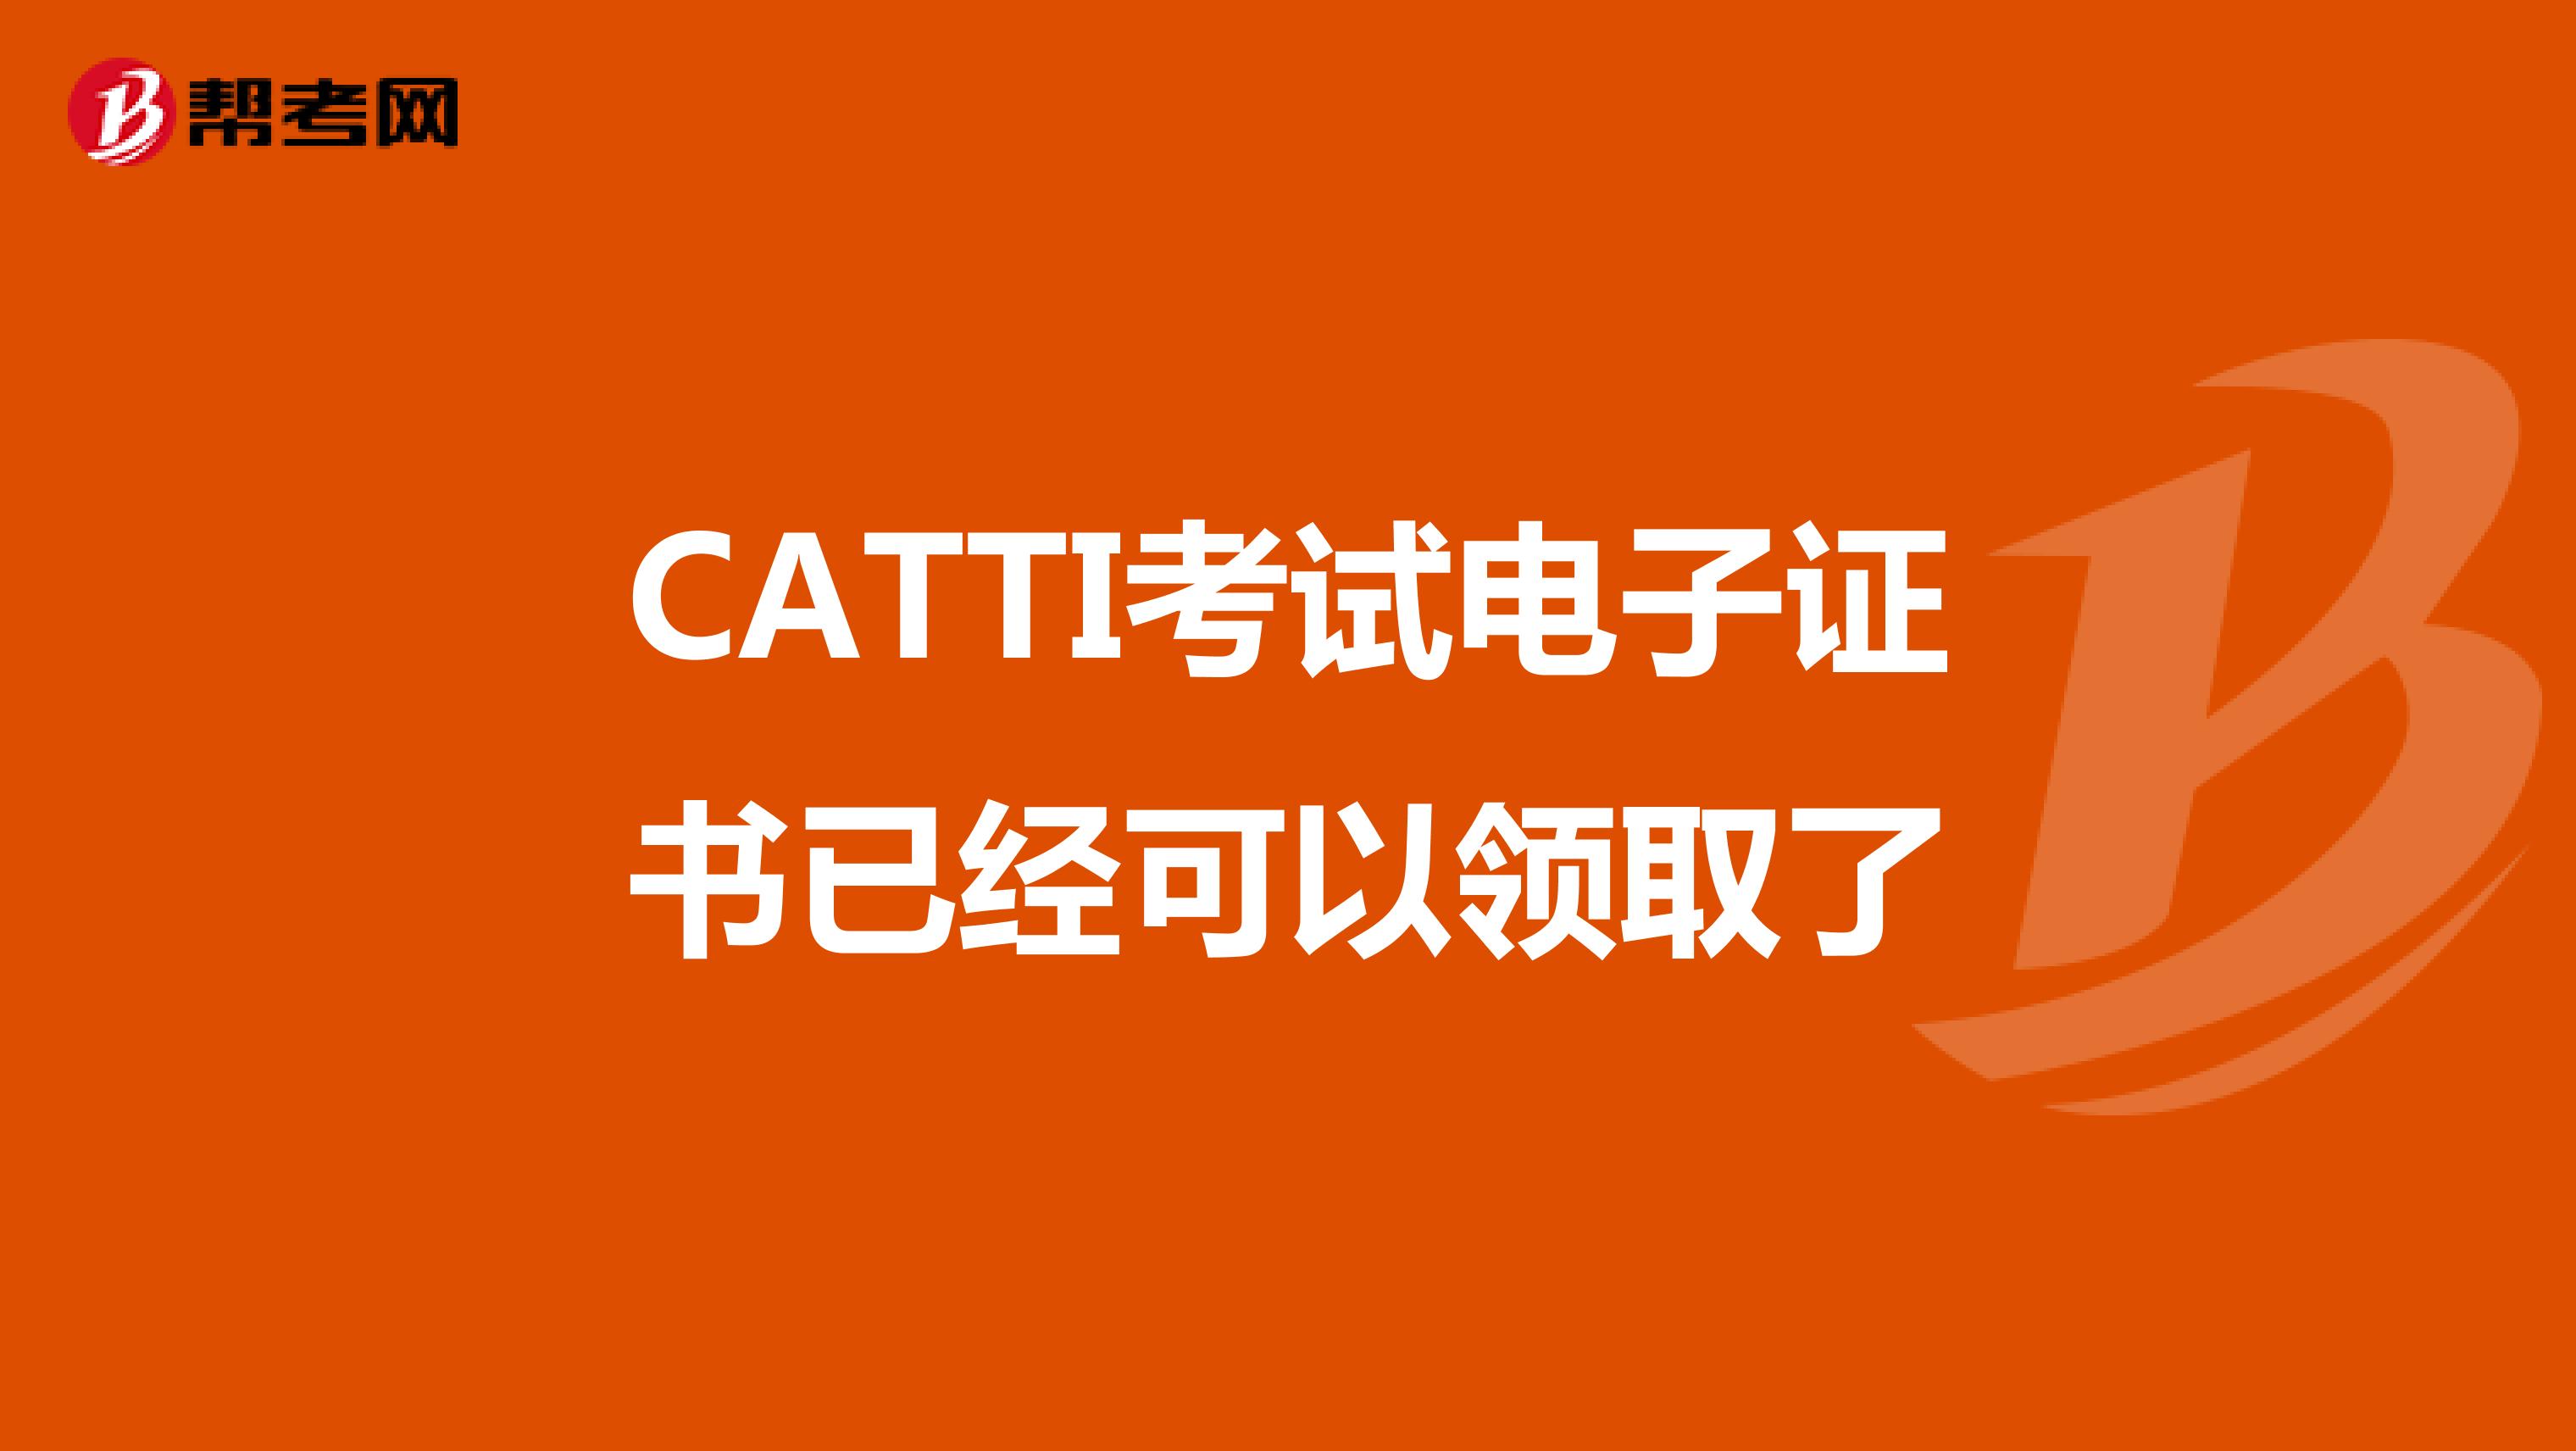 CATTI考试电子证书已经可以领取了